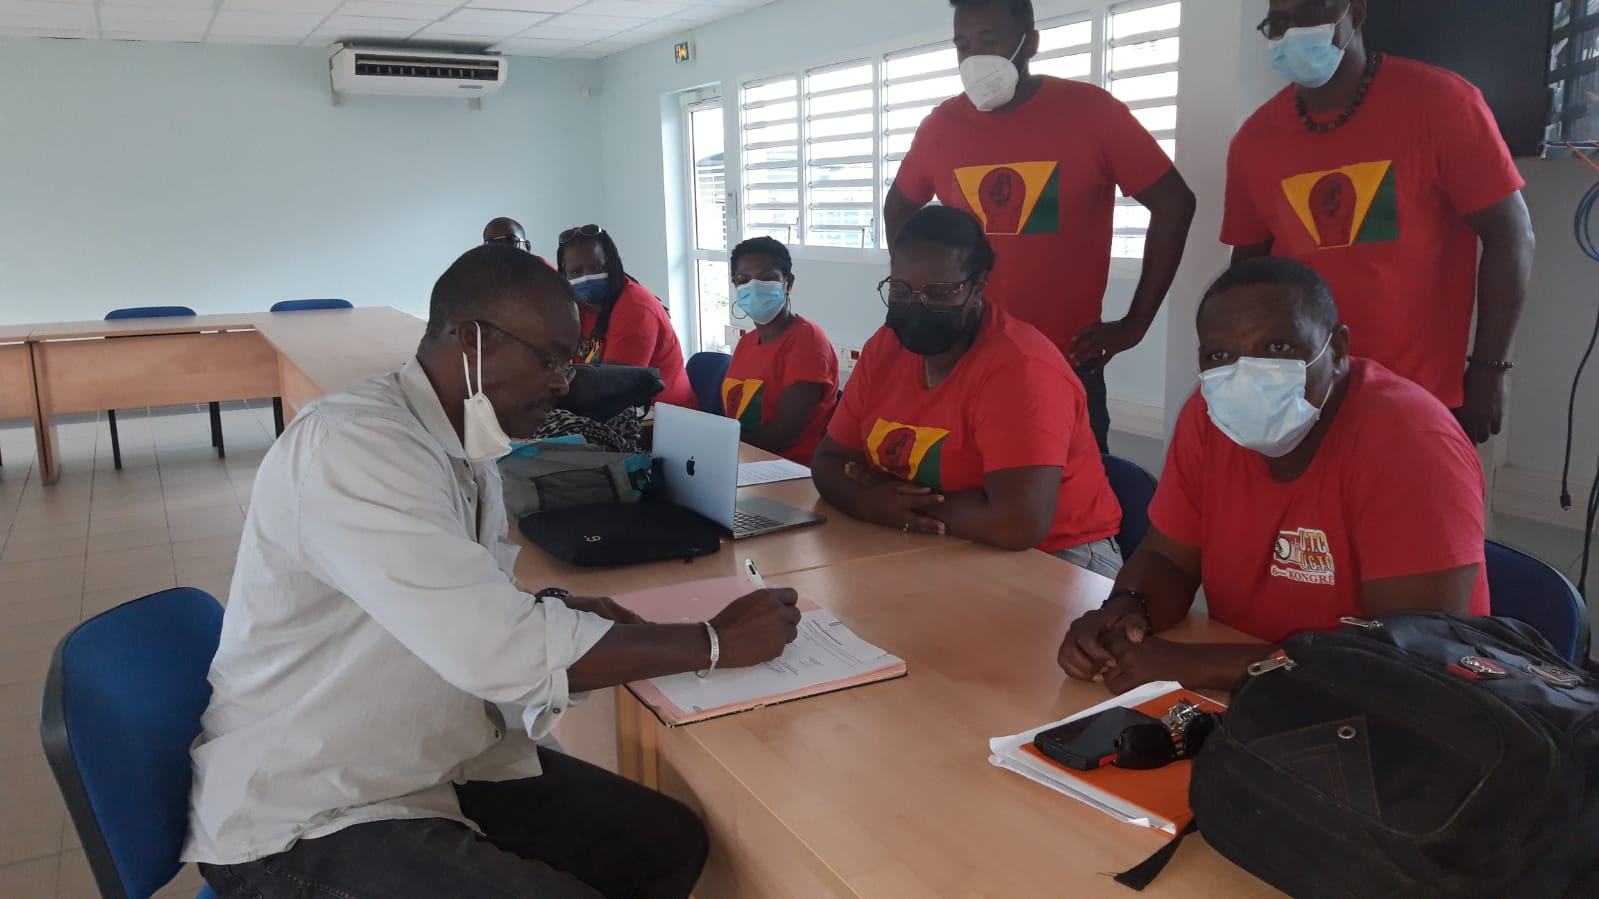     Fin de grève à Guadeloupe Formation 

